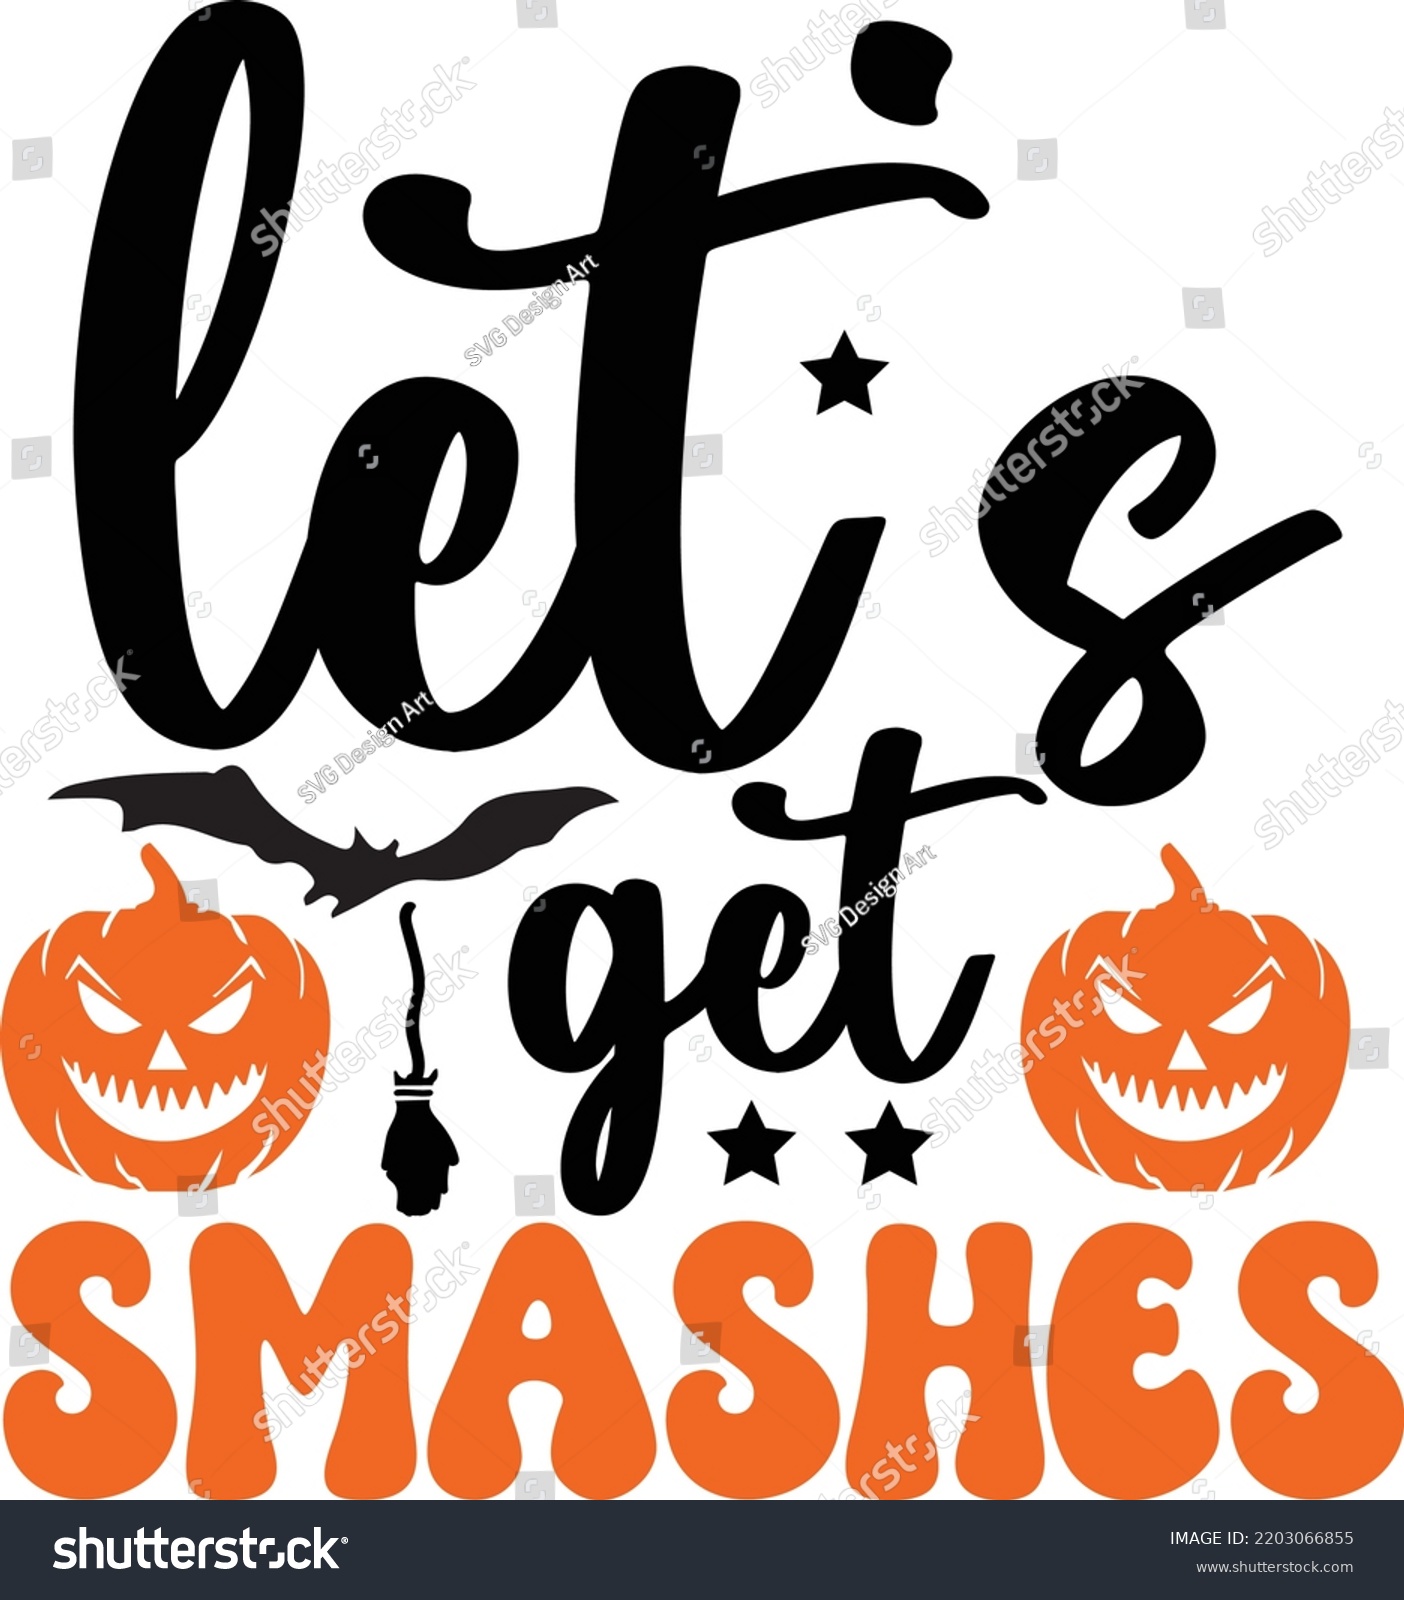 SVG of let's get Smashes Halloween svg design craft cutting file svg